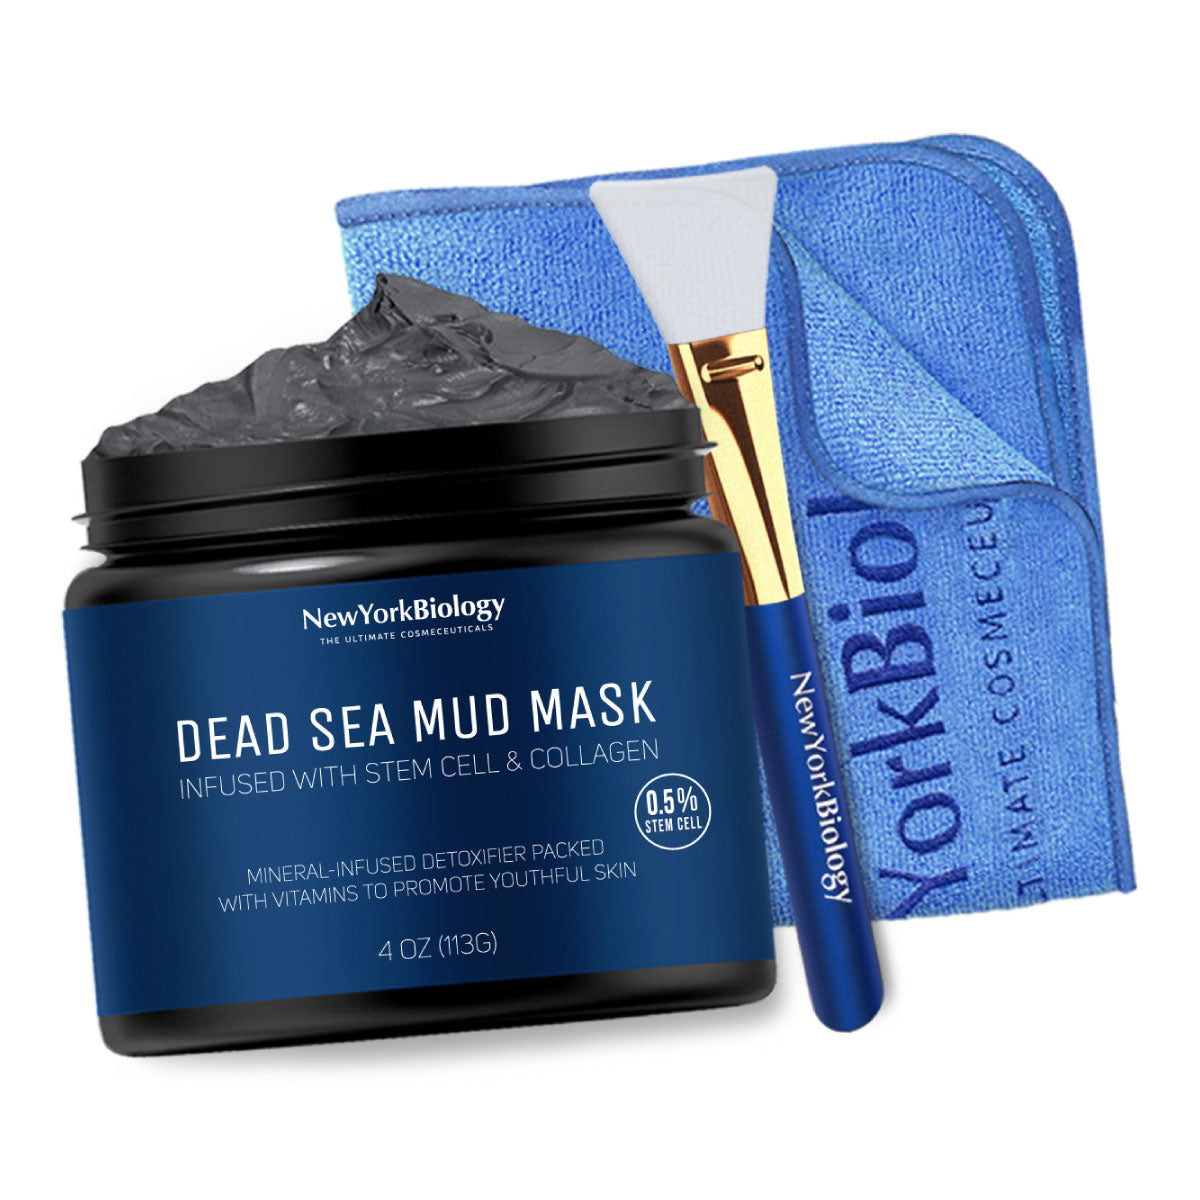 Dead Sea Mud Mask Complete Kit